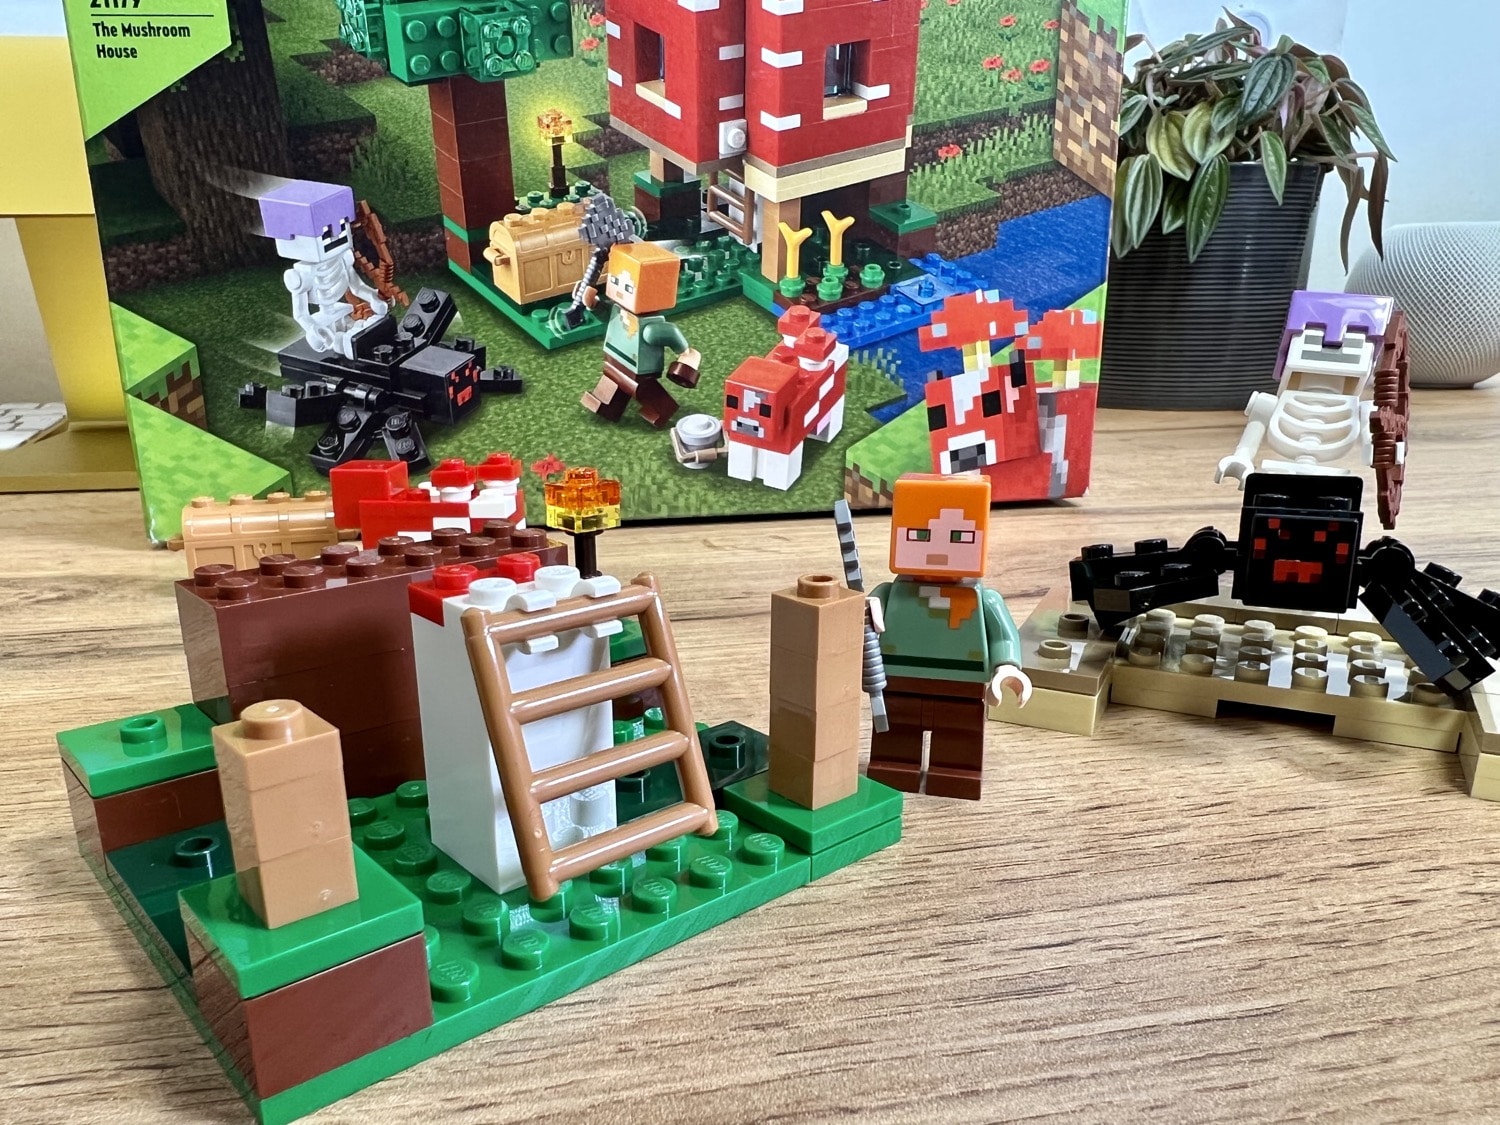 21179: LEGO Pilzhaus der Minecraft-Serie Das aus vorgestellt